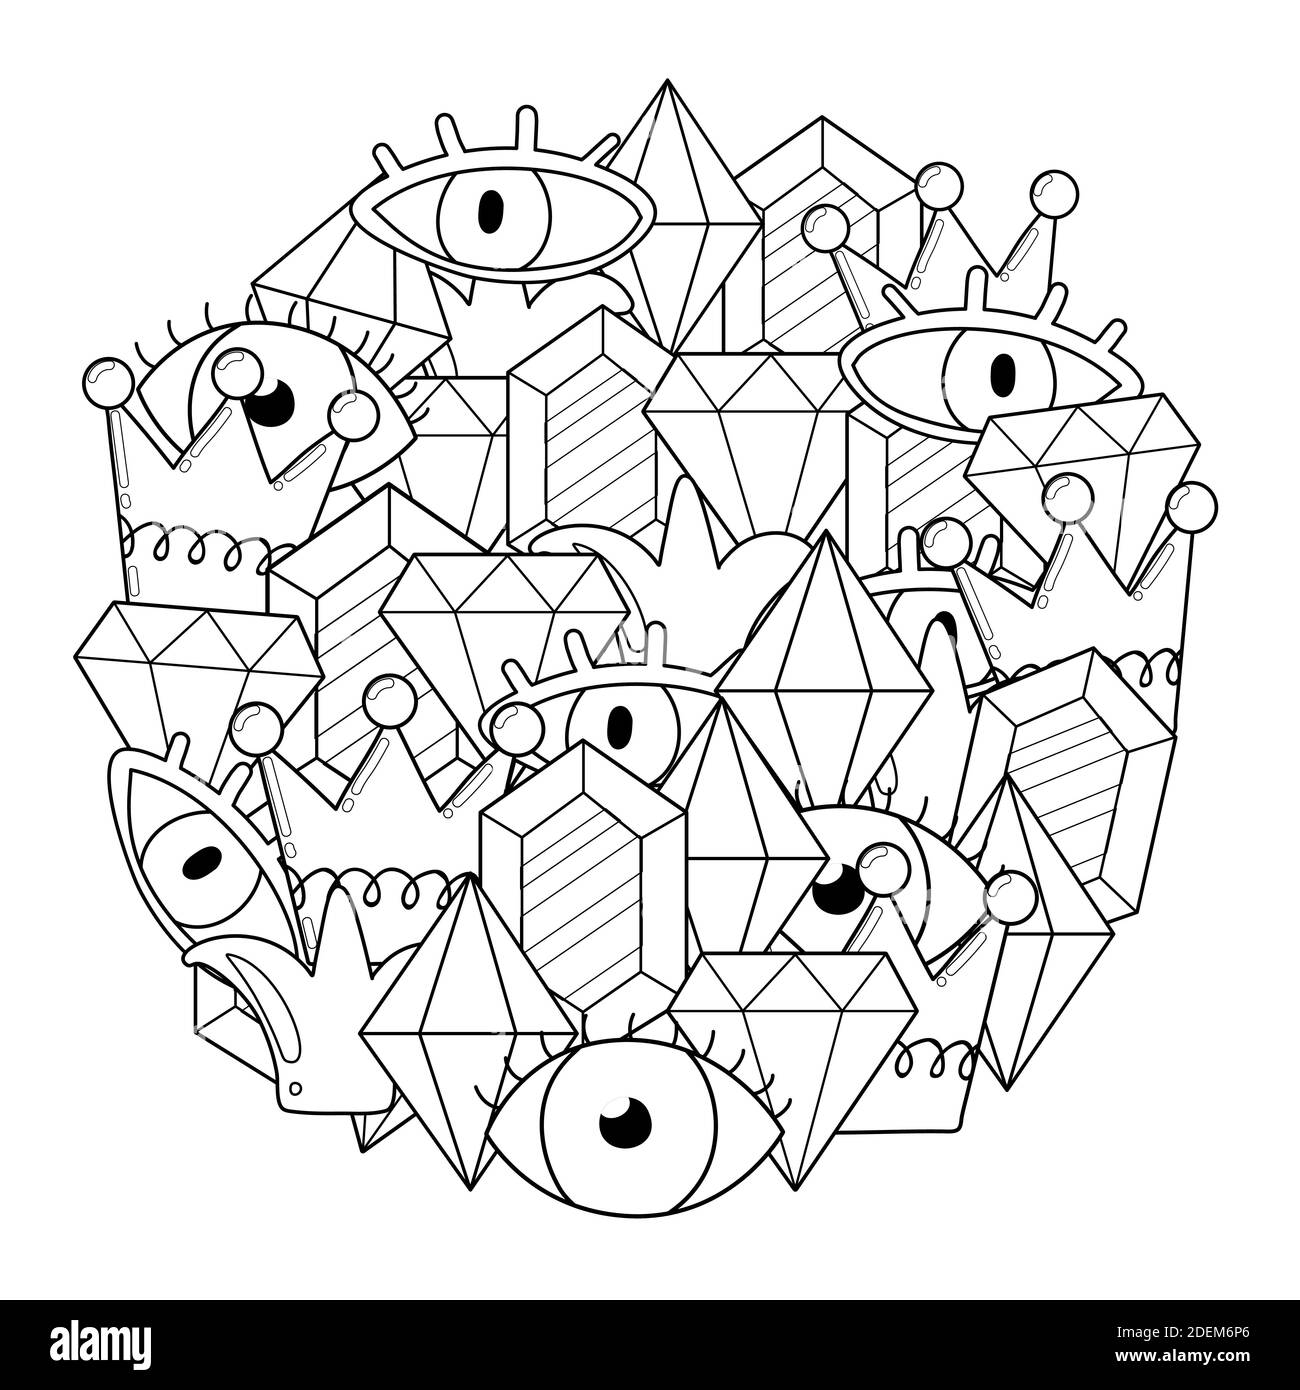 Circle Form Malseite mit Kristallen und Augen. Geheimnisvolles Doodle Mandala Stock Vektor